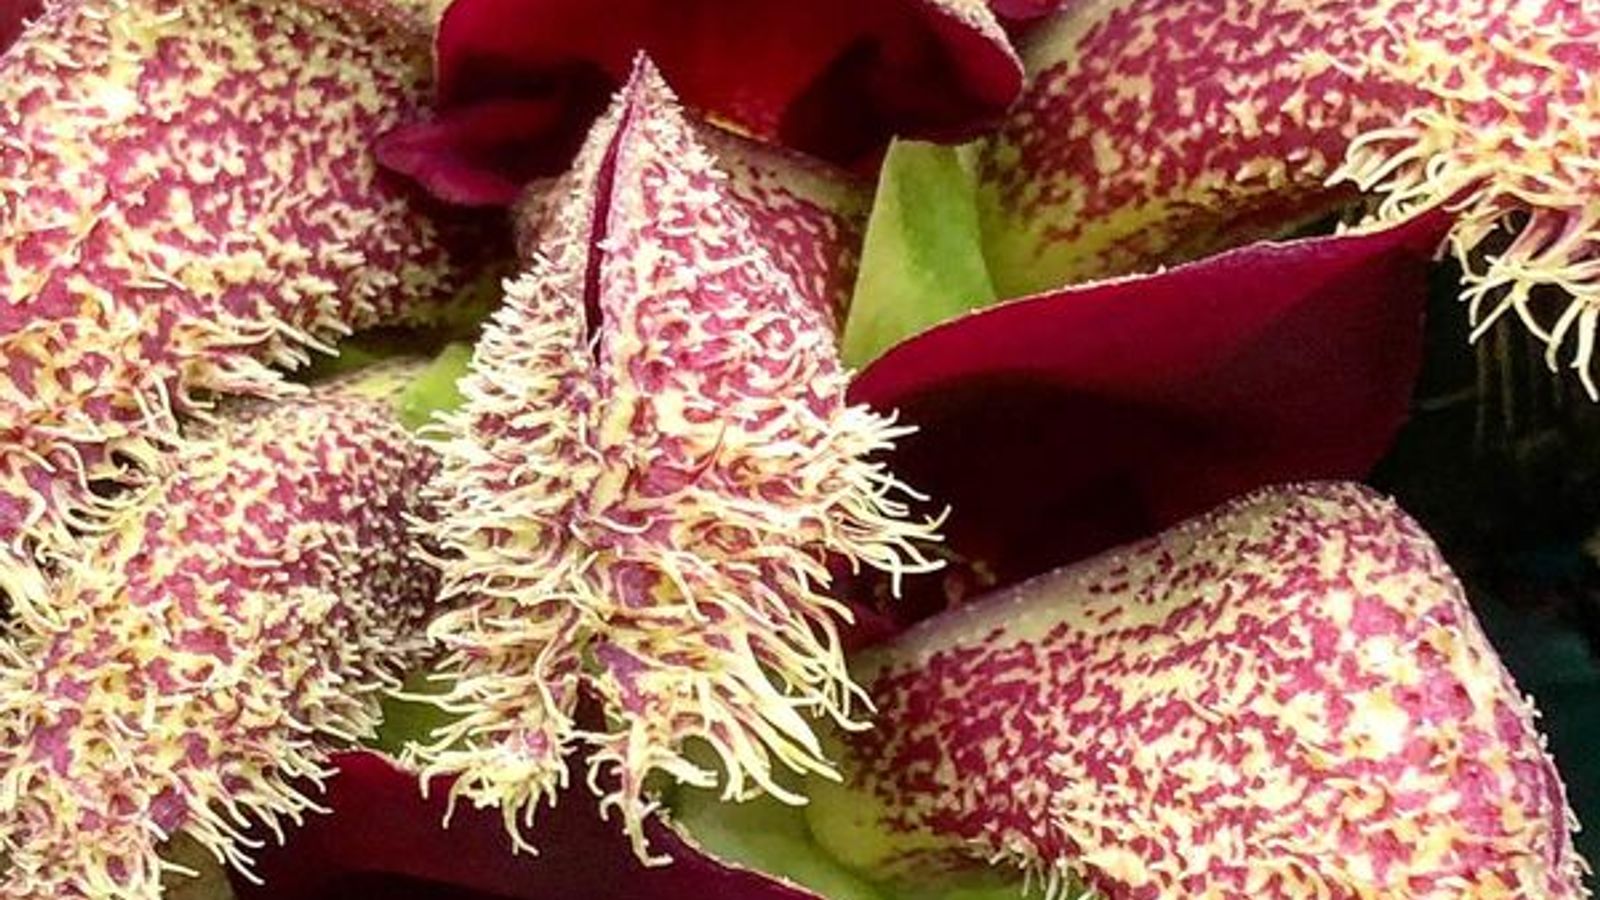 El jardín botánico de Cambridge revela una rara orquídea que huele a ratas muertas y coles podridas